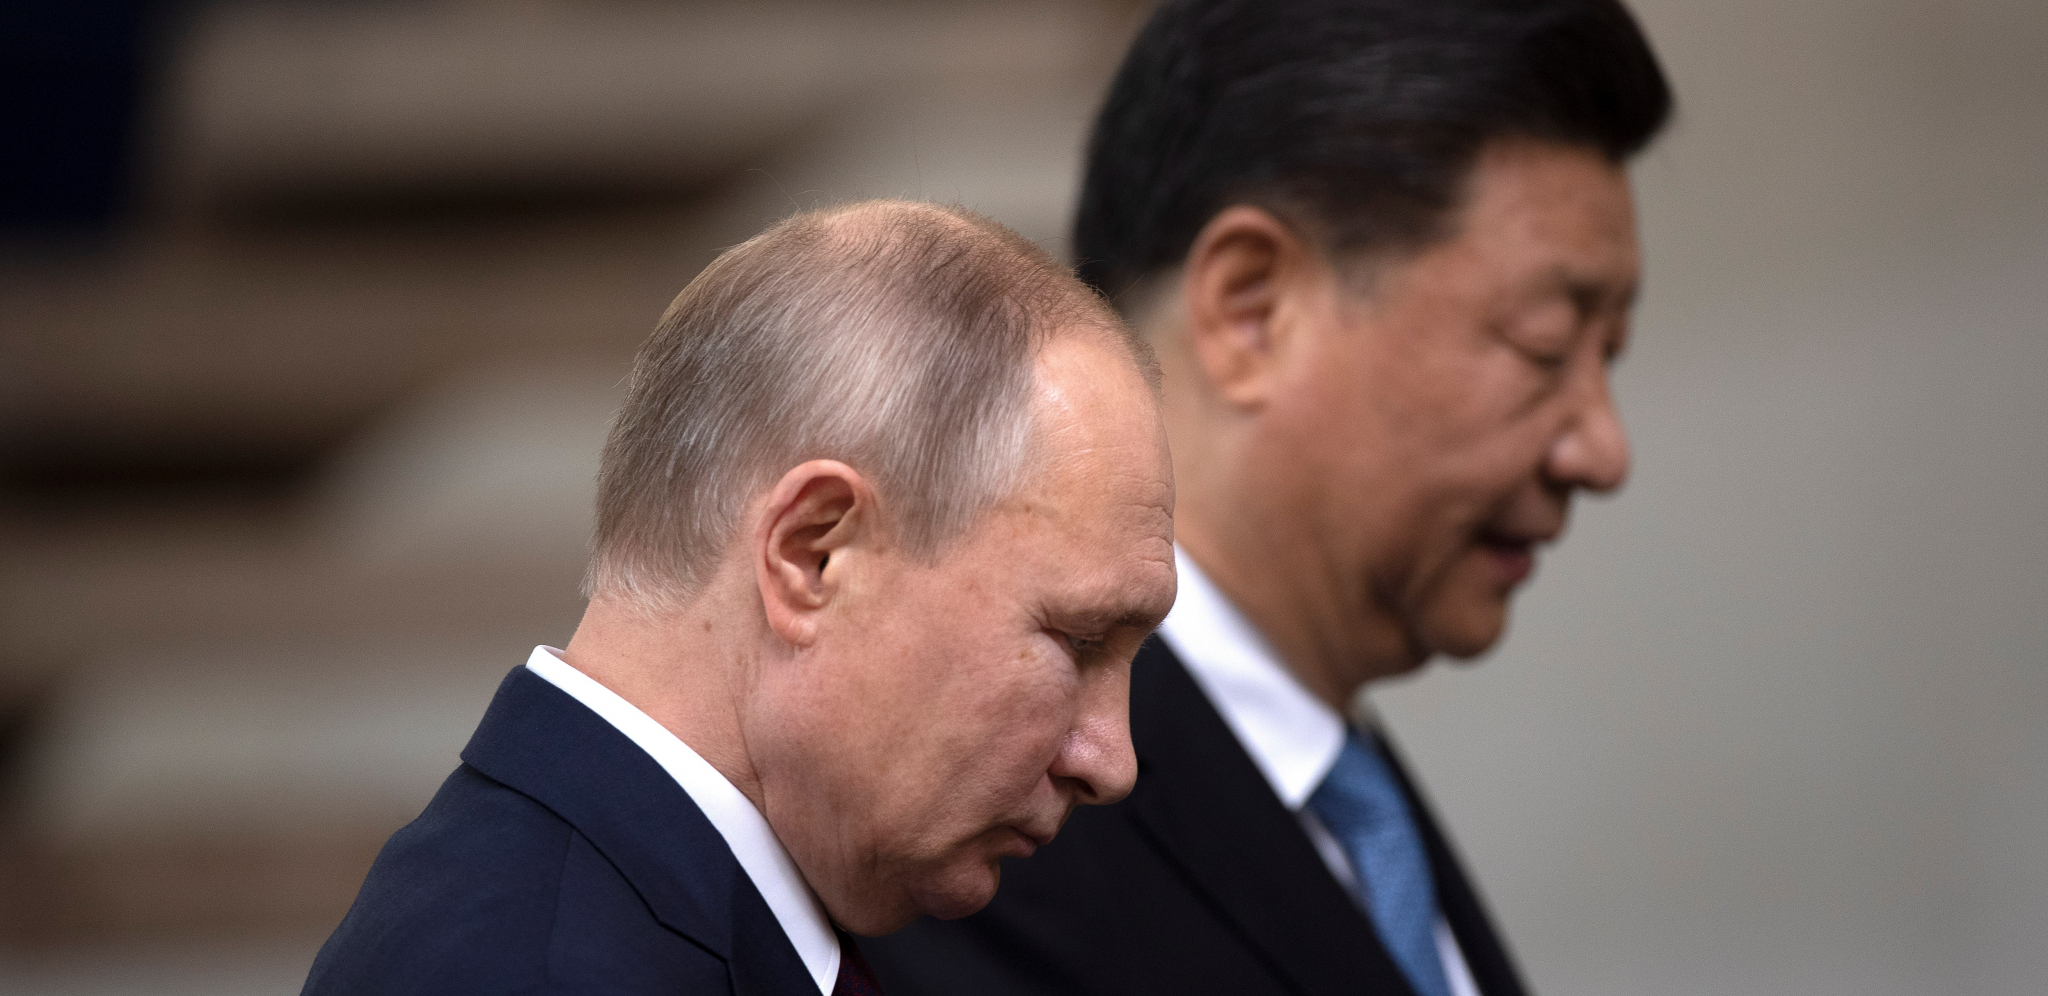 DODATNO JAČANJE STRATEŠKOG PARTNERSTVA Evo kako kineski mediji pišu o sastanku Si Đinpinga sa Putinom